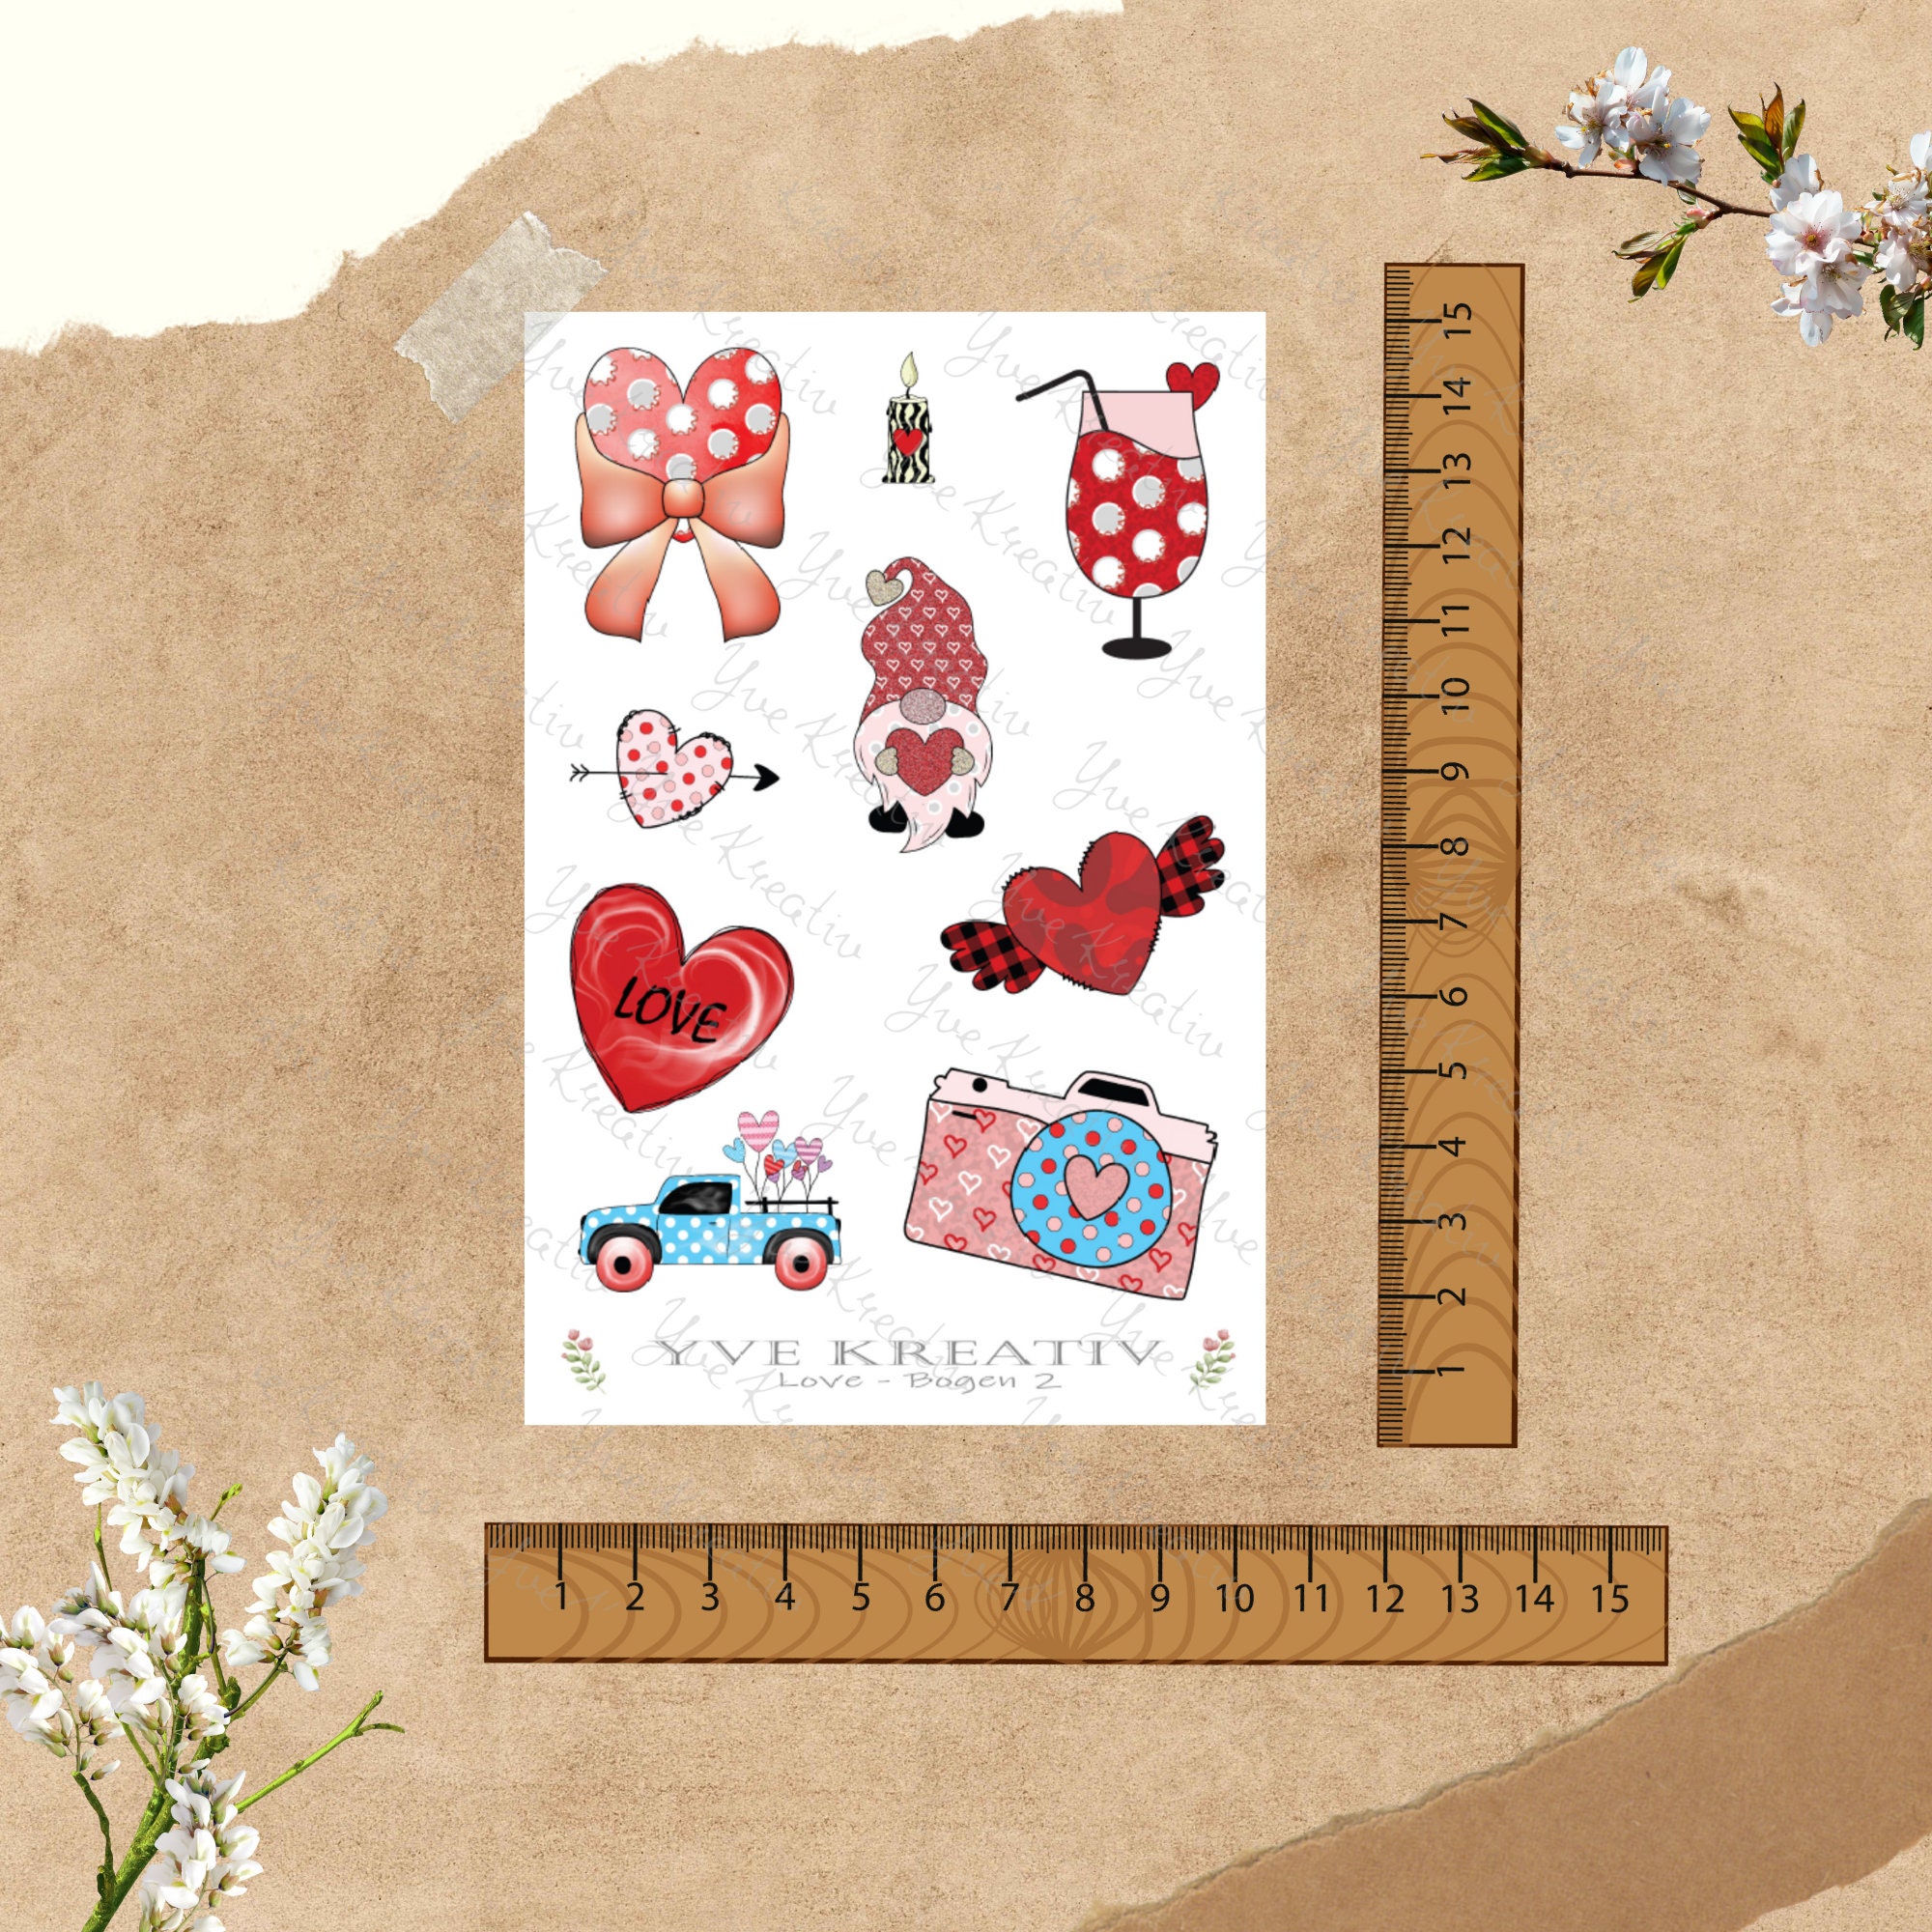 Sticker Bogen - Love | Sticker Set - Journal Sticker - Aufkleber 2 Bögen zur Auswahl